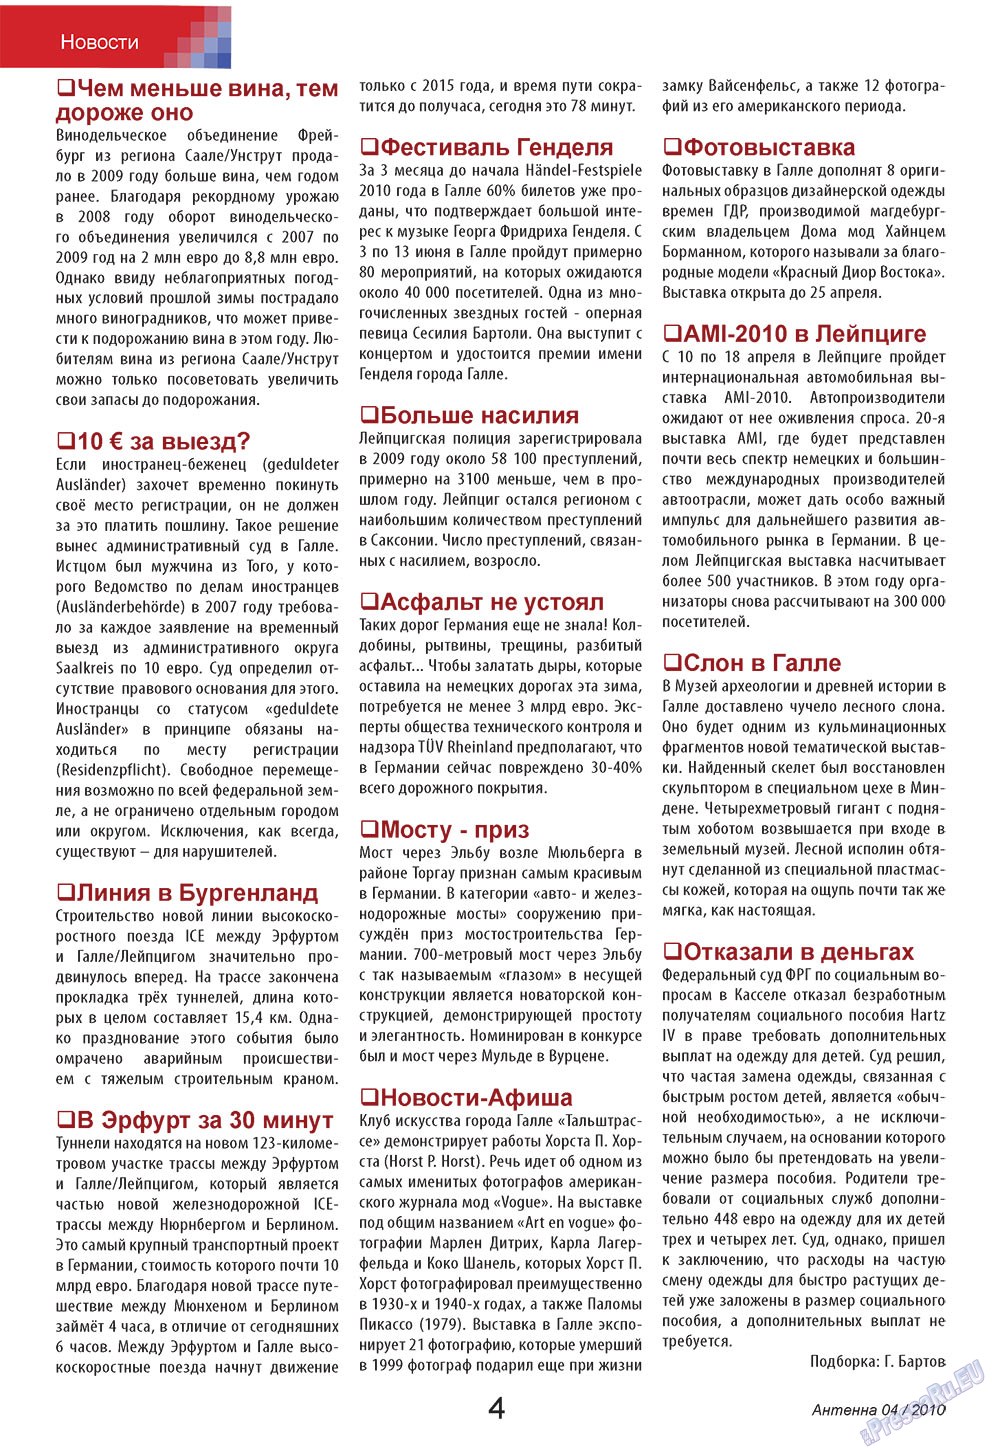 Антенна, журнал. 2010 №4 стр.4